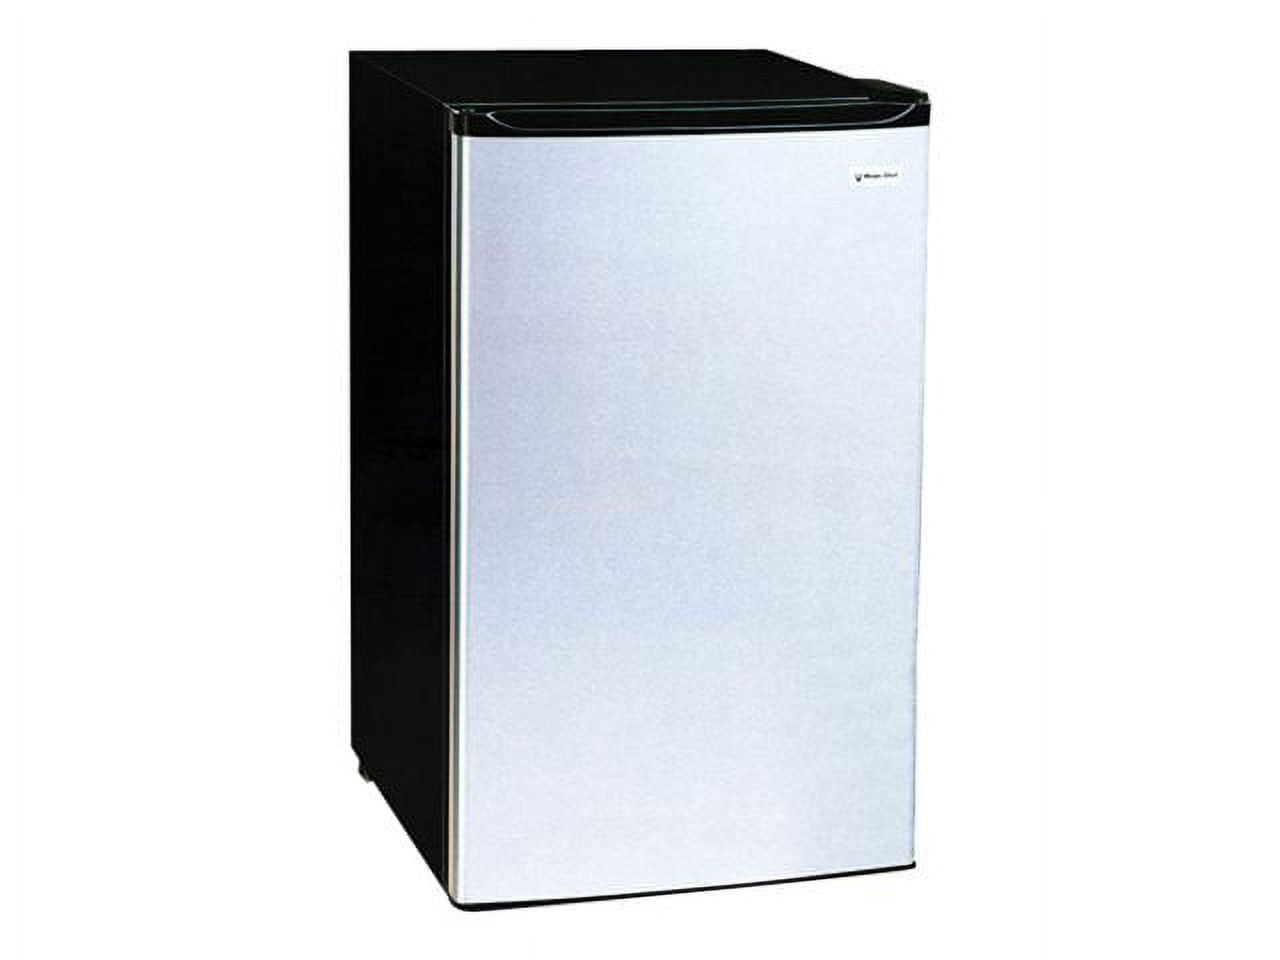 Magic Chef MCBR360S Refrigerator